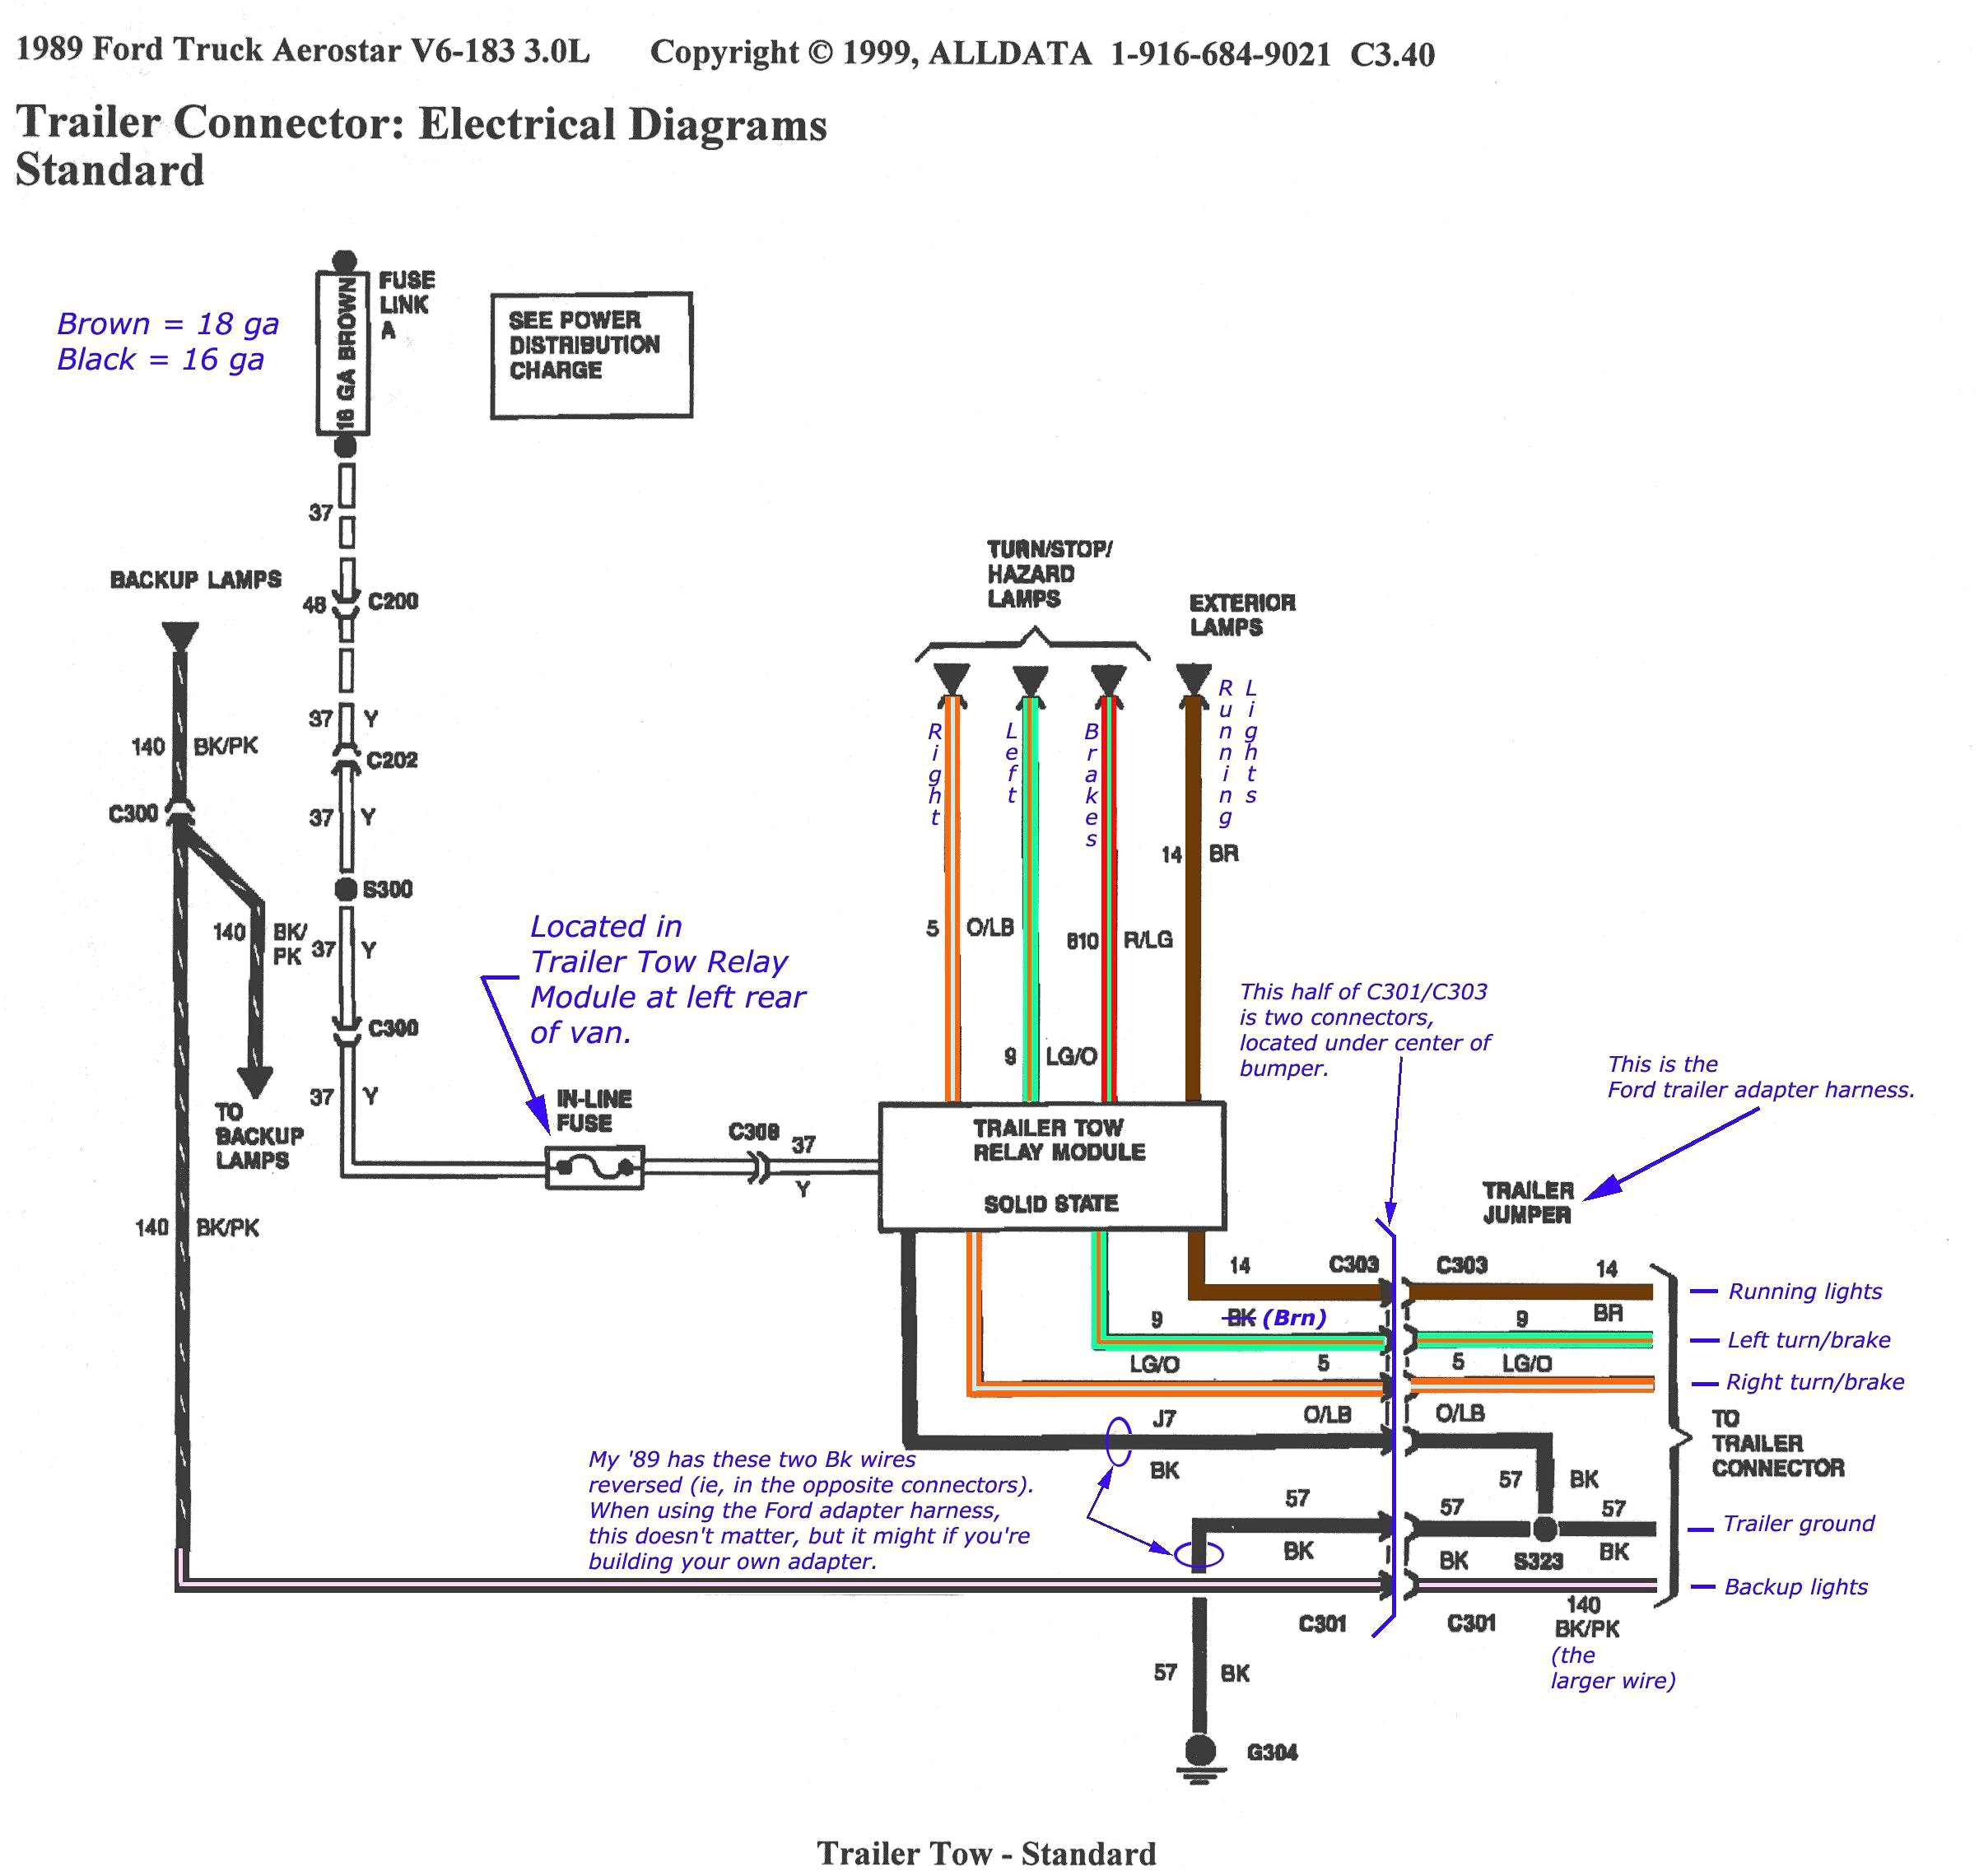 2002 taurus wiring diagram 2012 ford taurus wiring diagram wiring diagram blog of 2002 taurus wiring diagram jpg